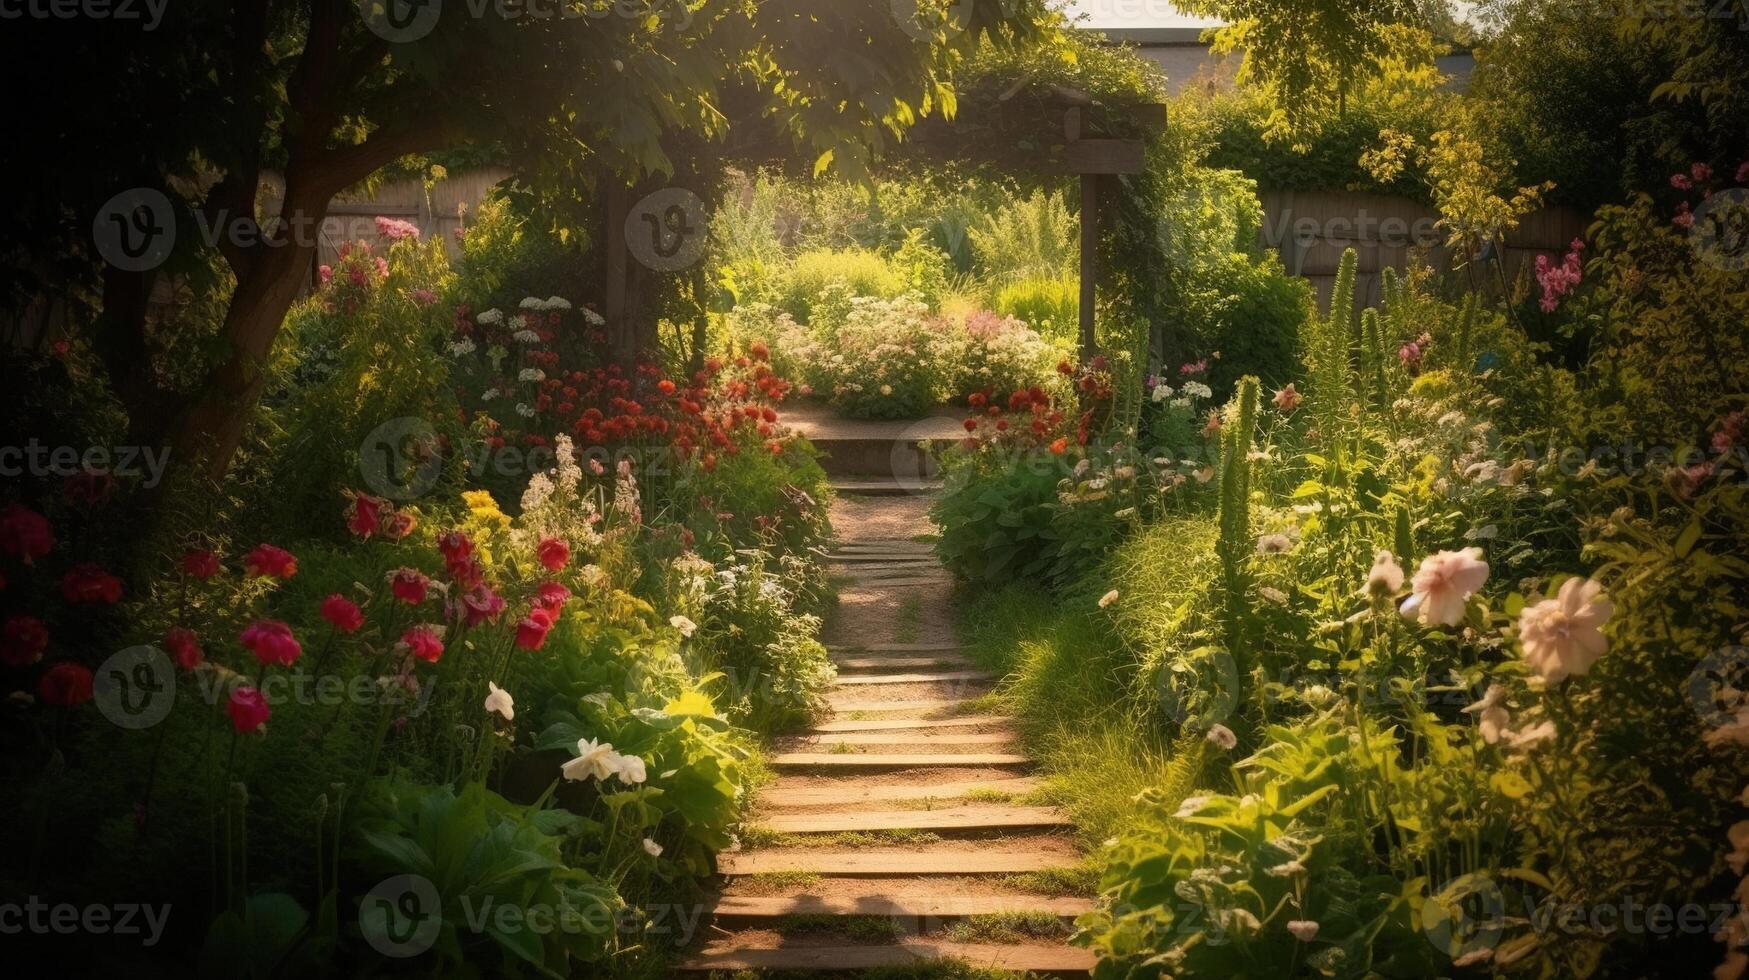 generatief ai, mooi zomer privaat tuin met veel bloemen en planten, natuur landschap, Engels platteland huisje stijl foto